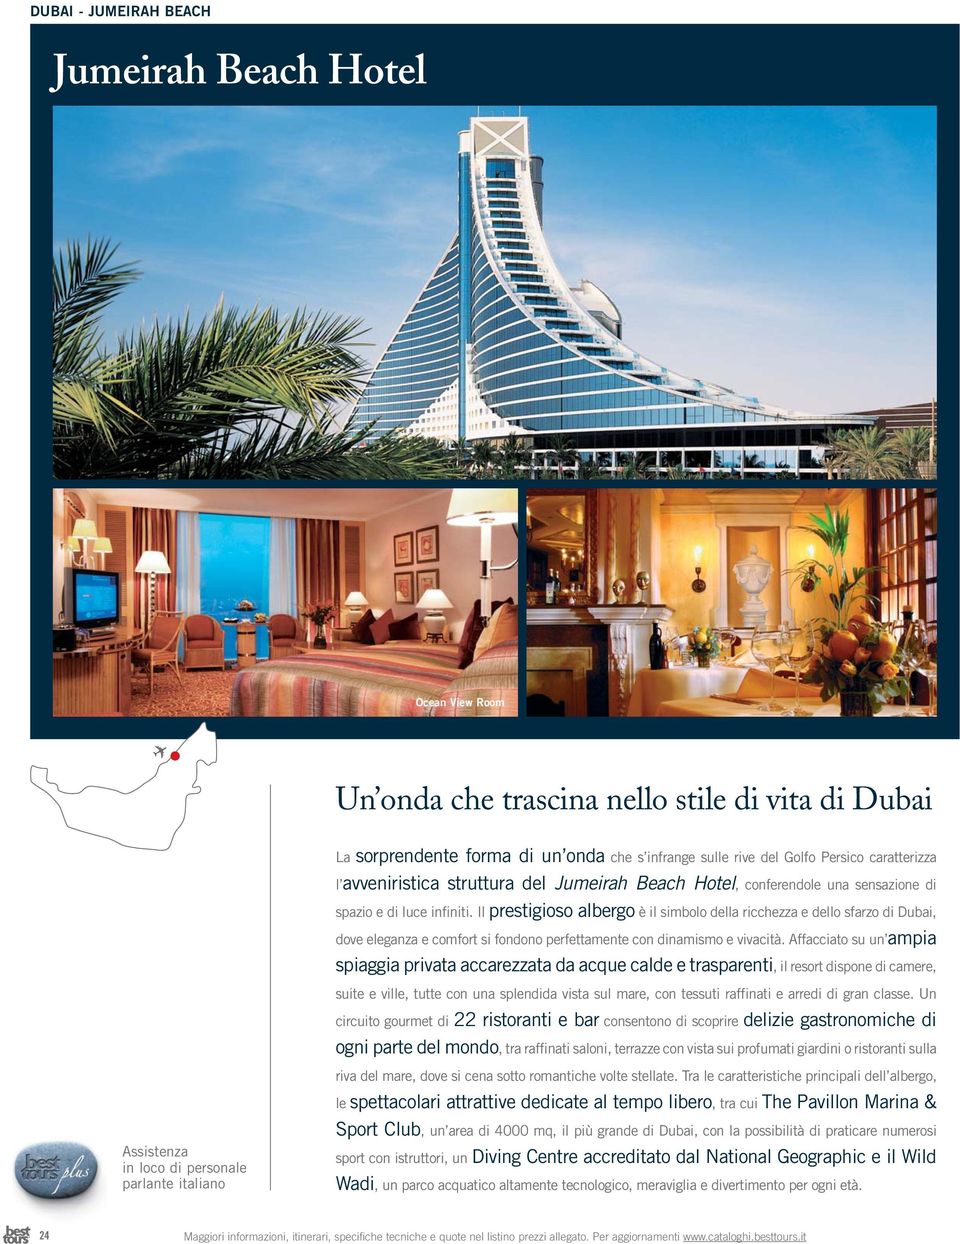 Il prestigioso albergo è il simbolo della ricchezza e dello sfarzo di Dubai, dove eleganza e comfort si fondono perfettamente con dinamismo e vivacità.